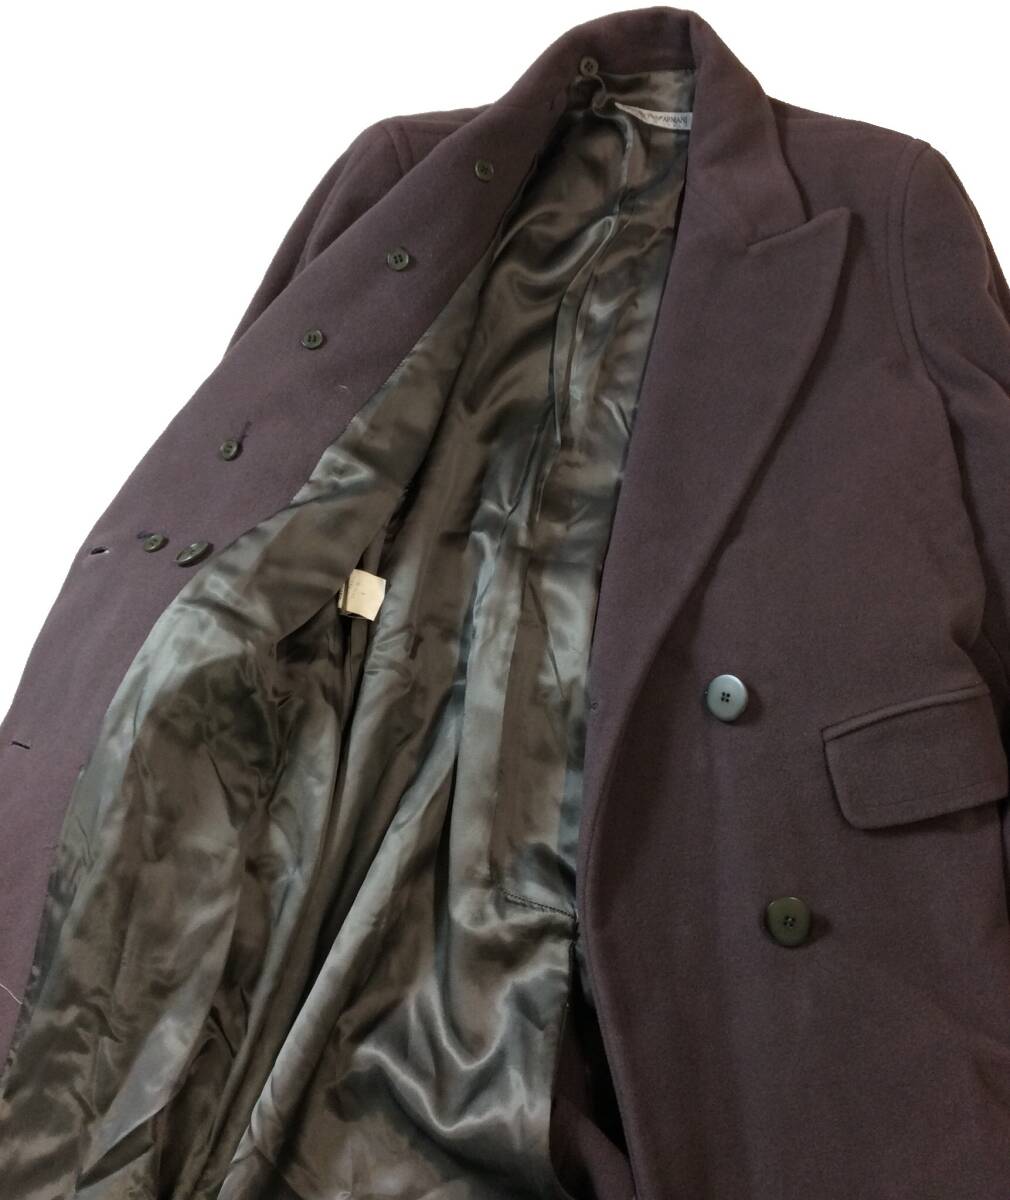 EMPORIO ARMANI Emporio Armani ITALY производства шерсть длинное пальто Пальто Честерфилд двойной оттенок коричневого женский 38 (ma)